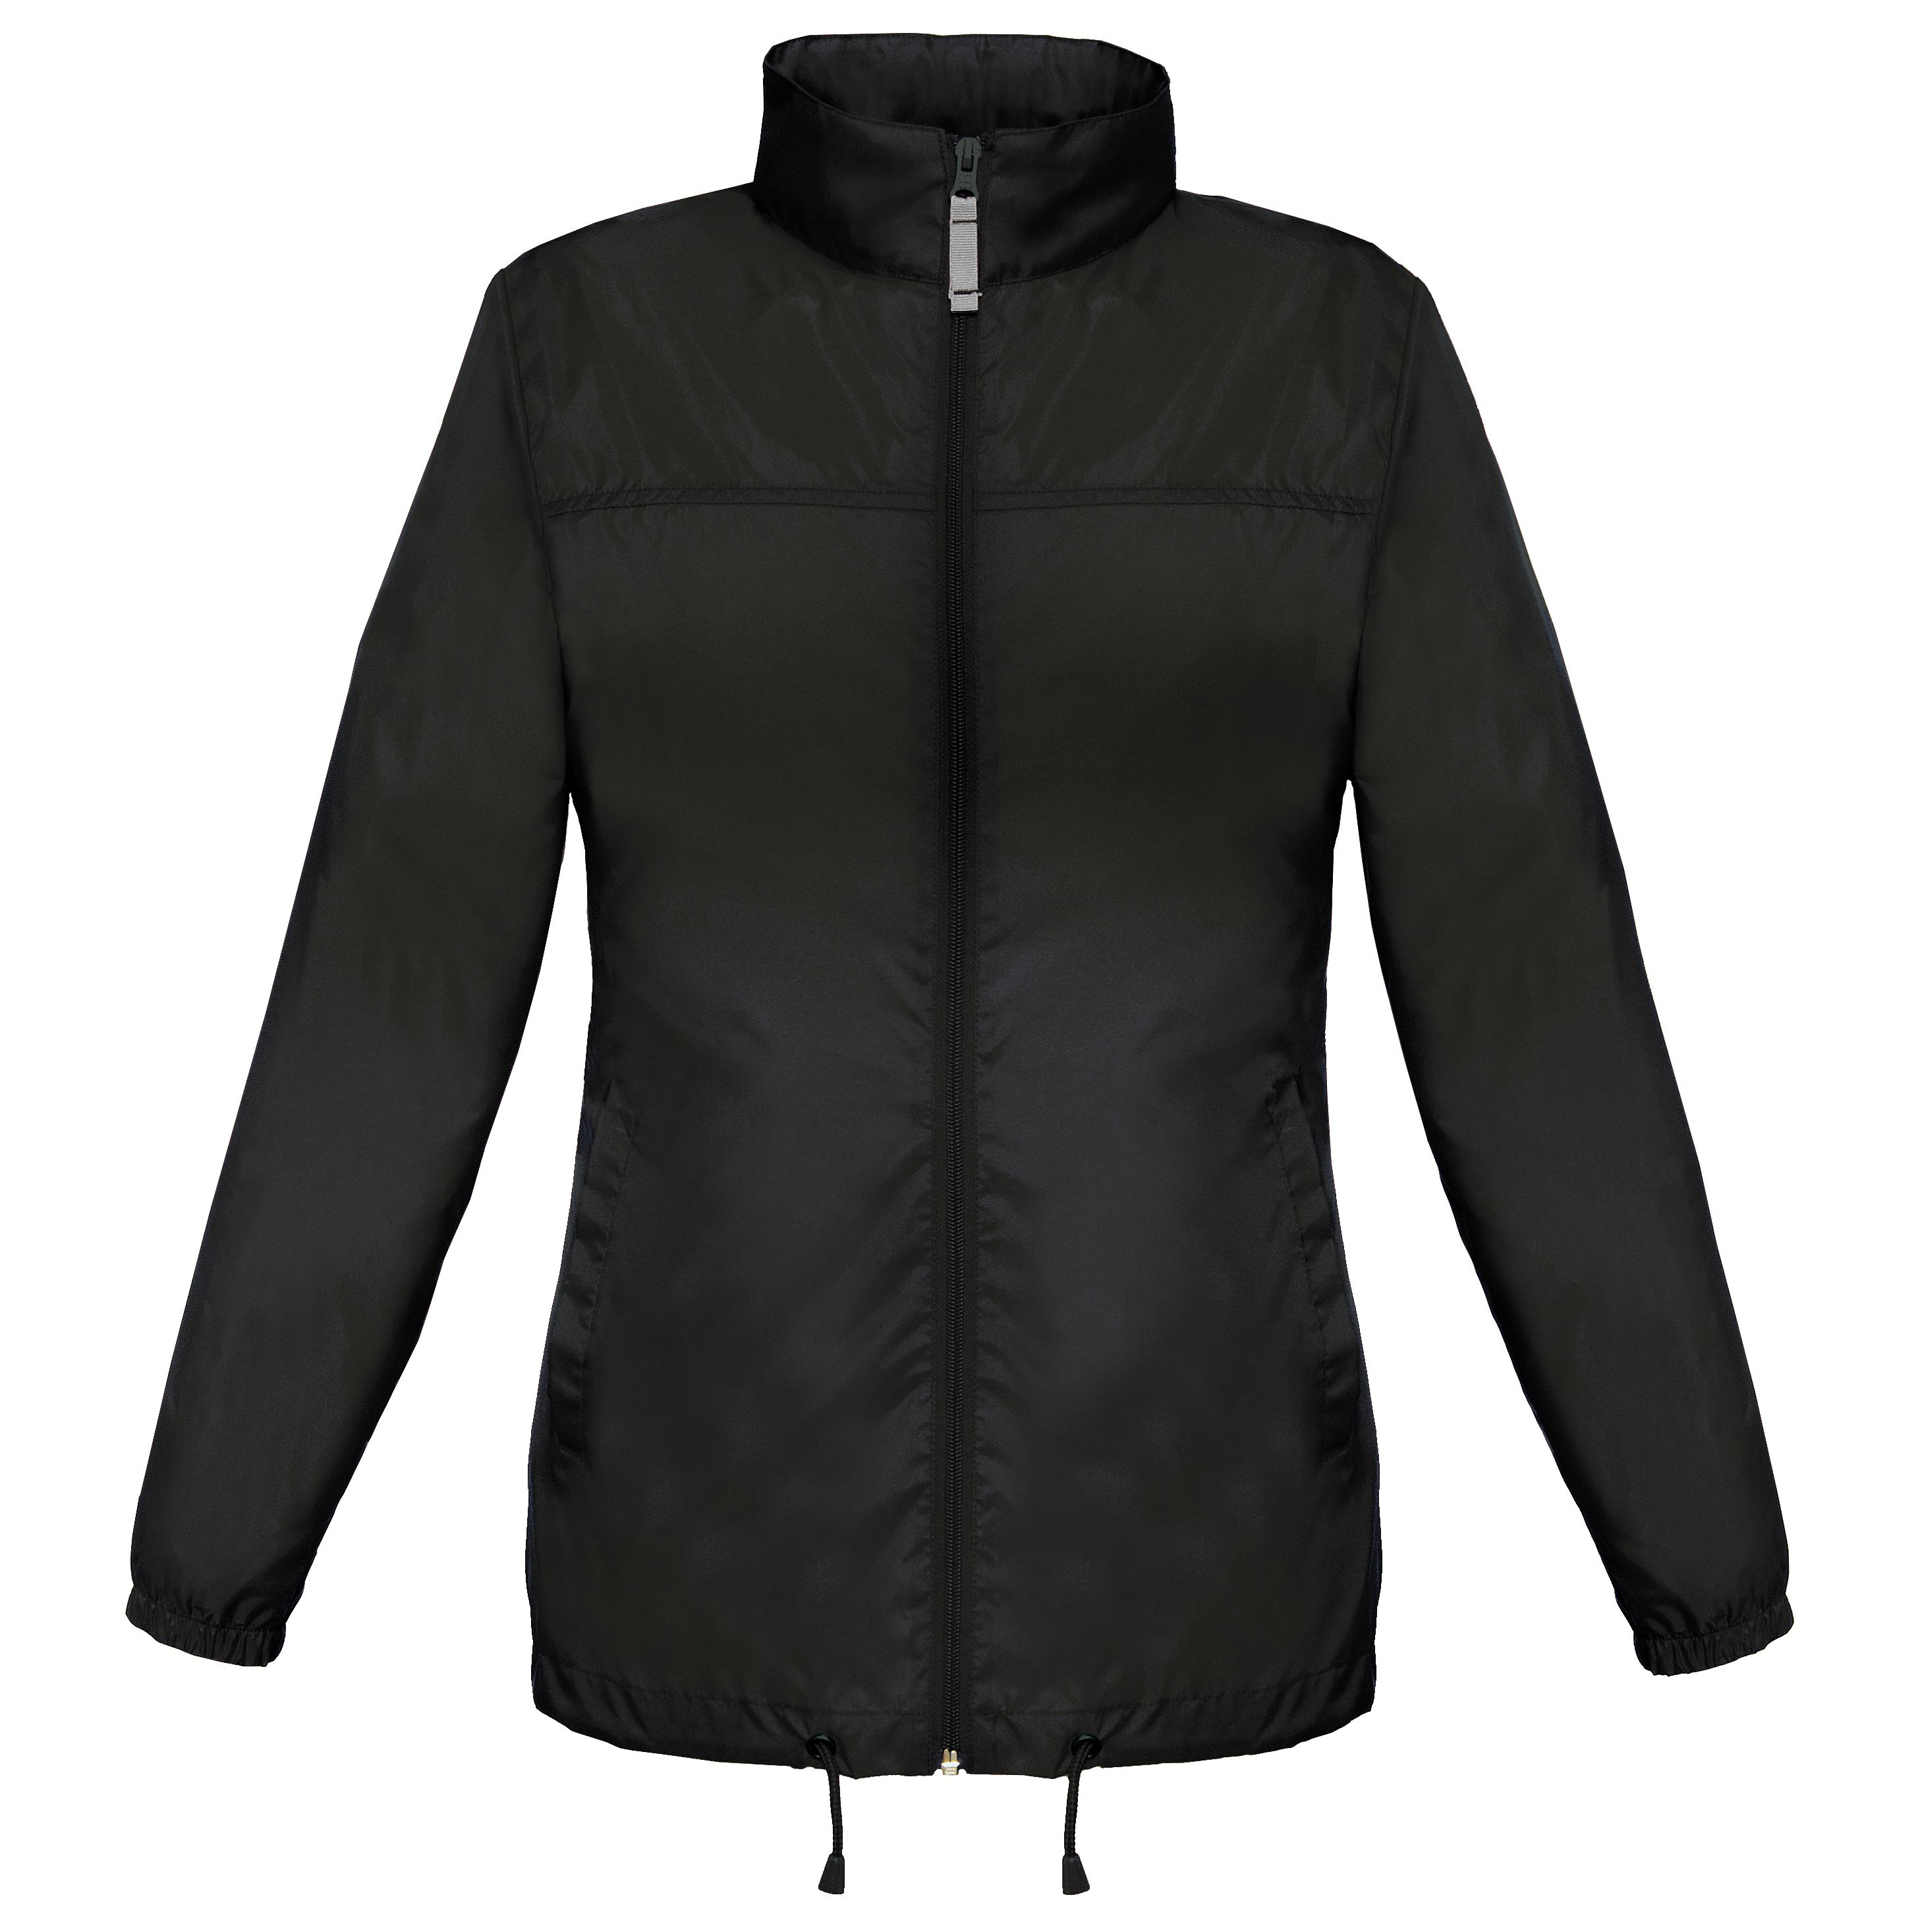 Women's Sirocco Jacket in black